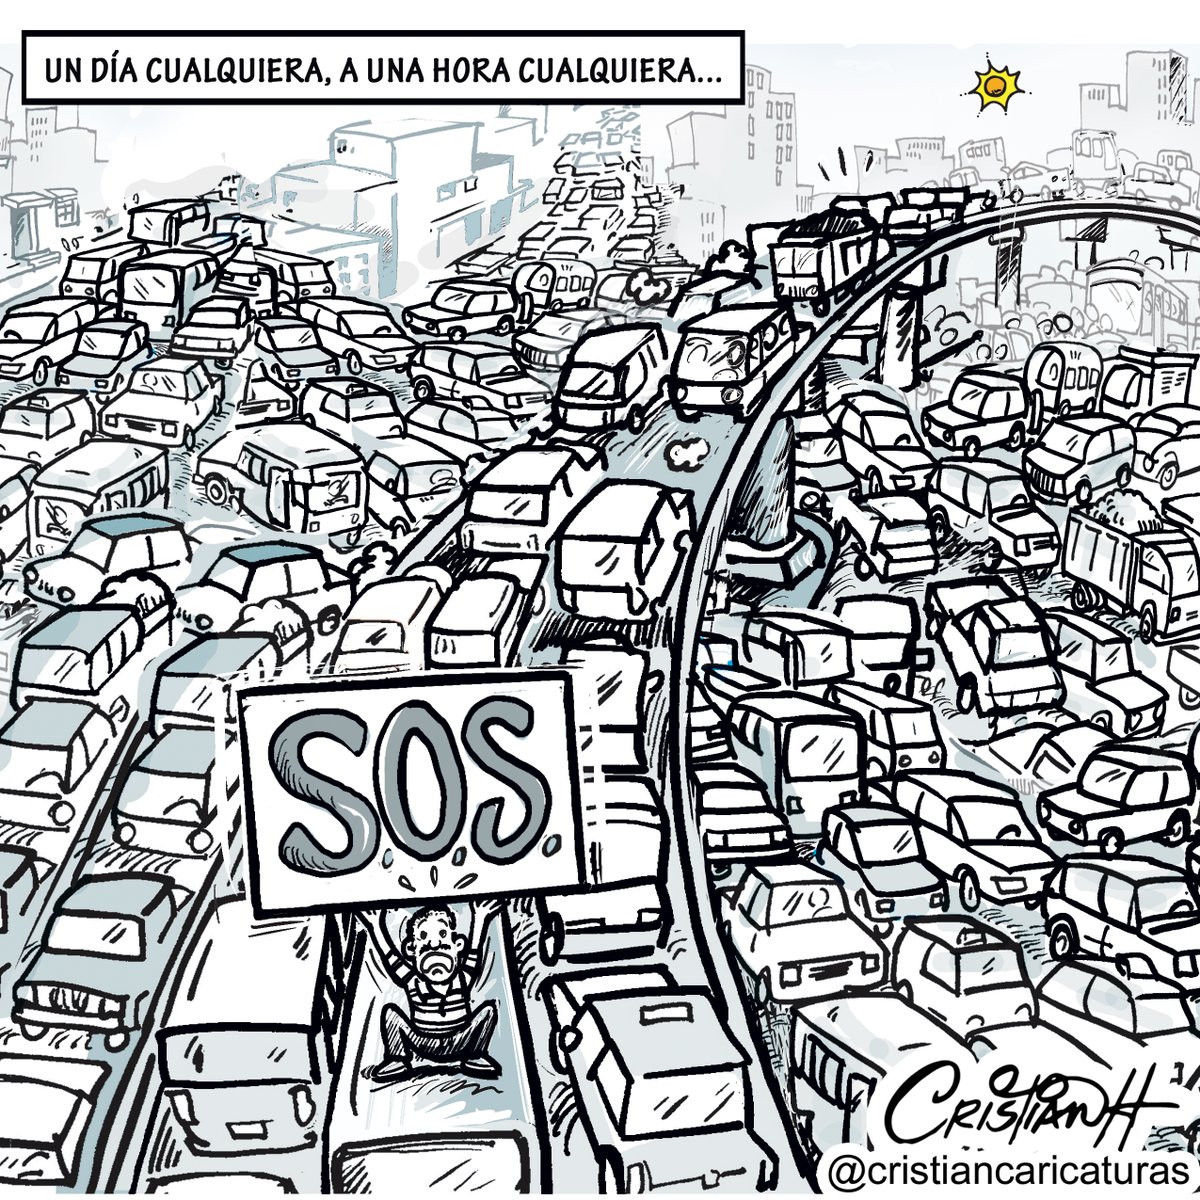 Santo Domingo 24/7 Mi caricatura del miércoles 20 de marzo 2024 en el periódico @ElDia_do . . . . #SOS #UnSoloTapón #SantoDomingoColapsado #criscaricaturas